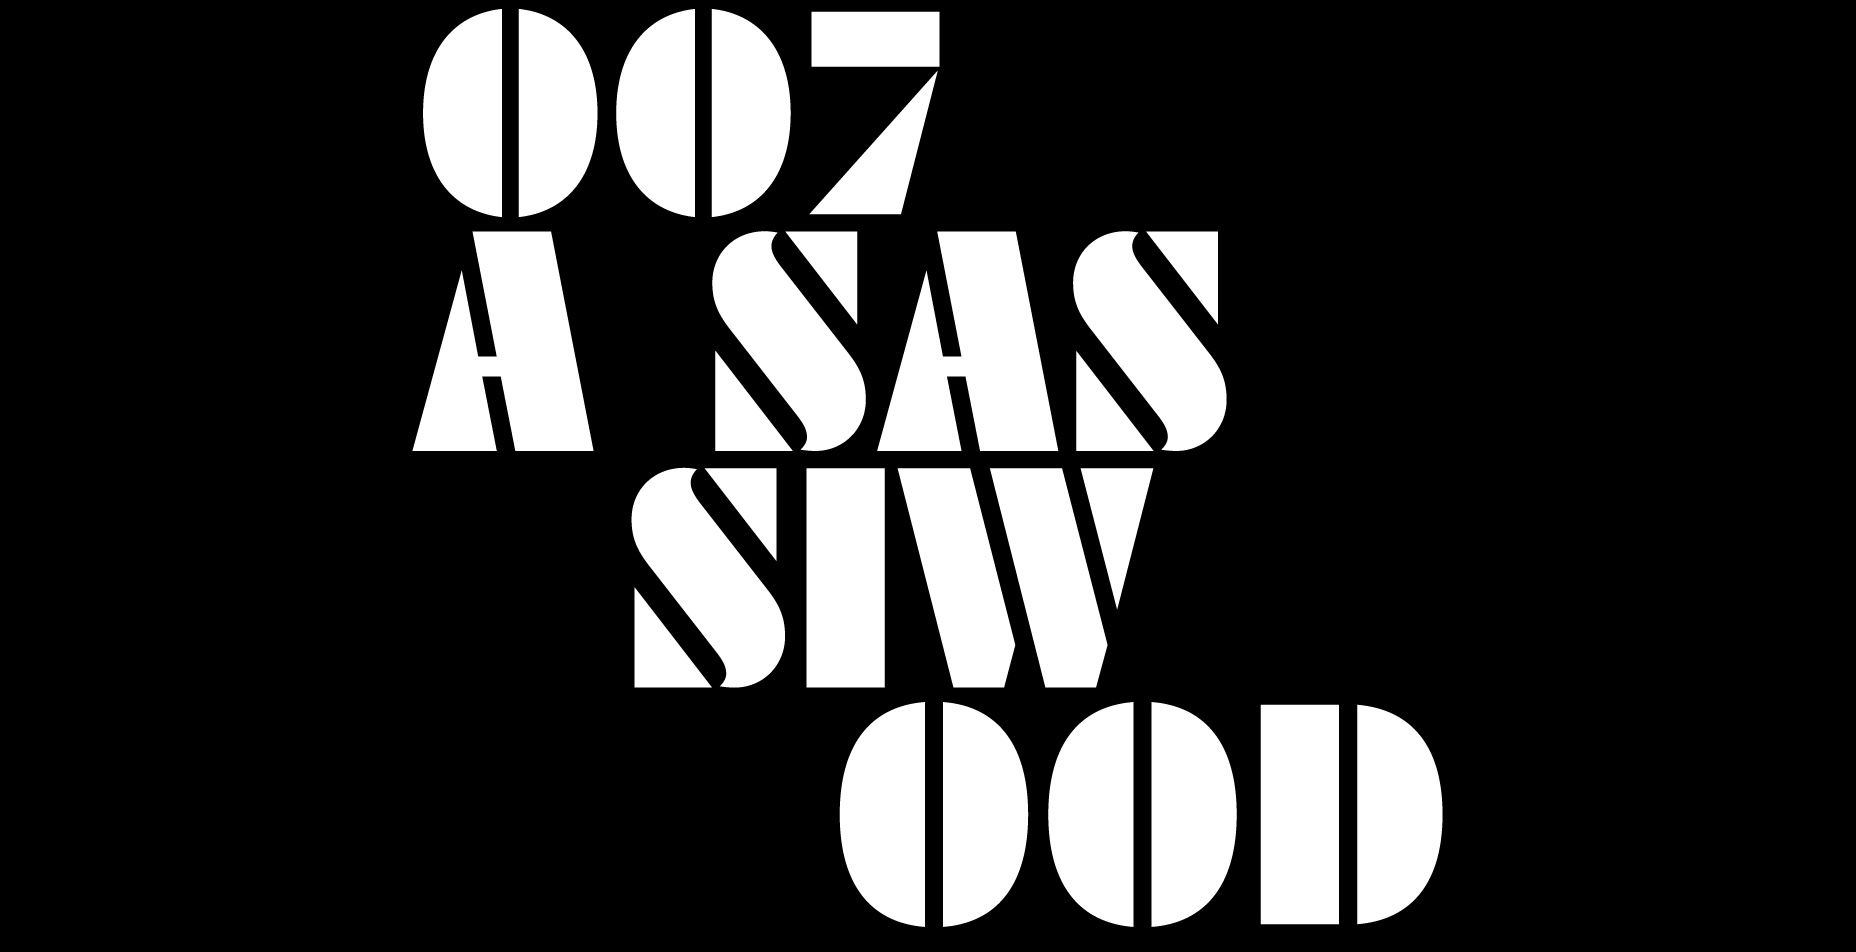 Matera, il 25 al cinema Piccolo “Che rapporto c’è tra “Sassiwood”, il film di Antonio Andrisani e Vito Cea, e l’agente 007?”